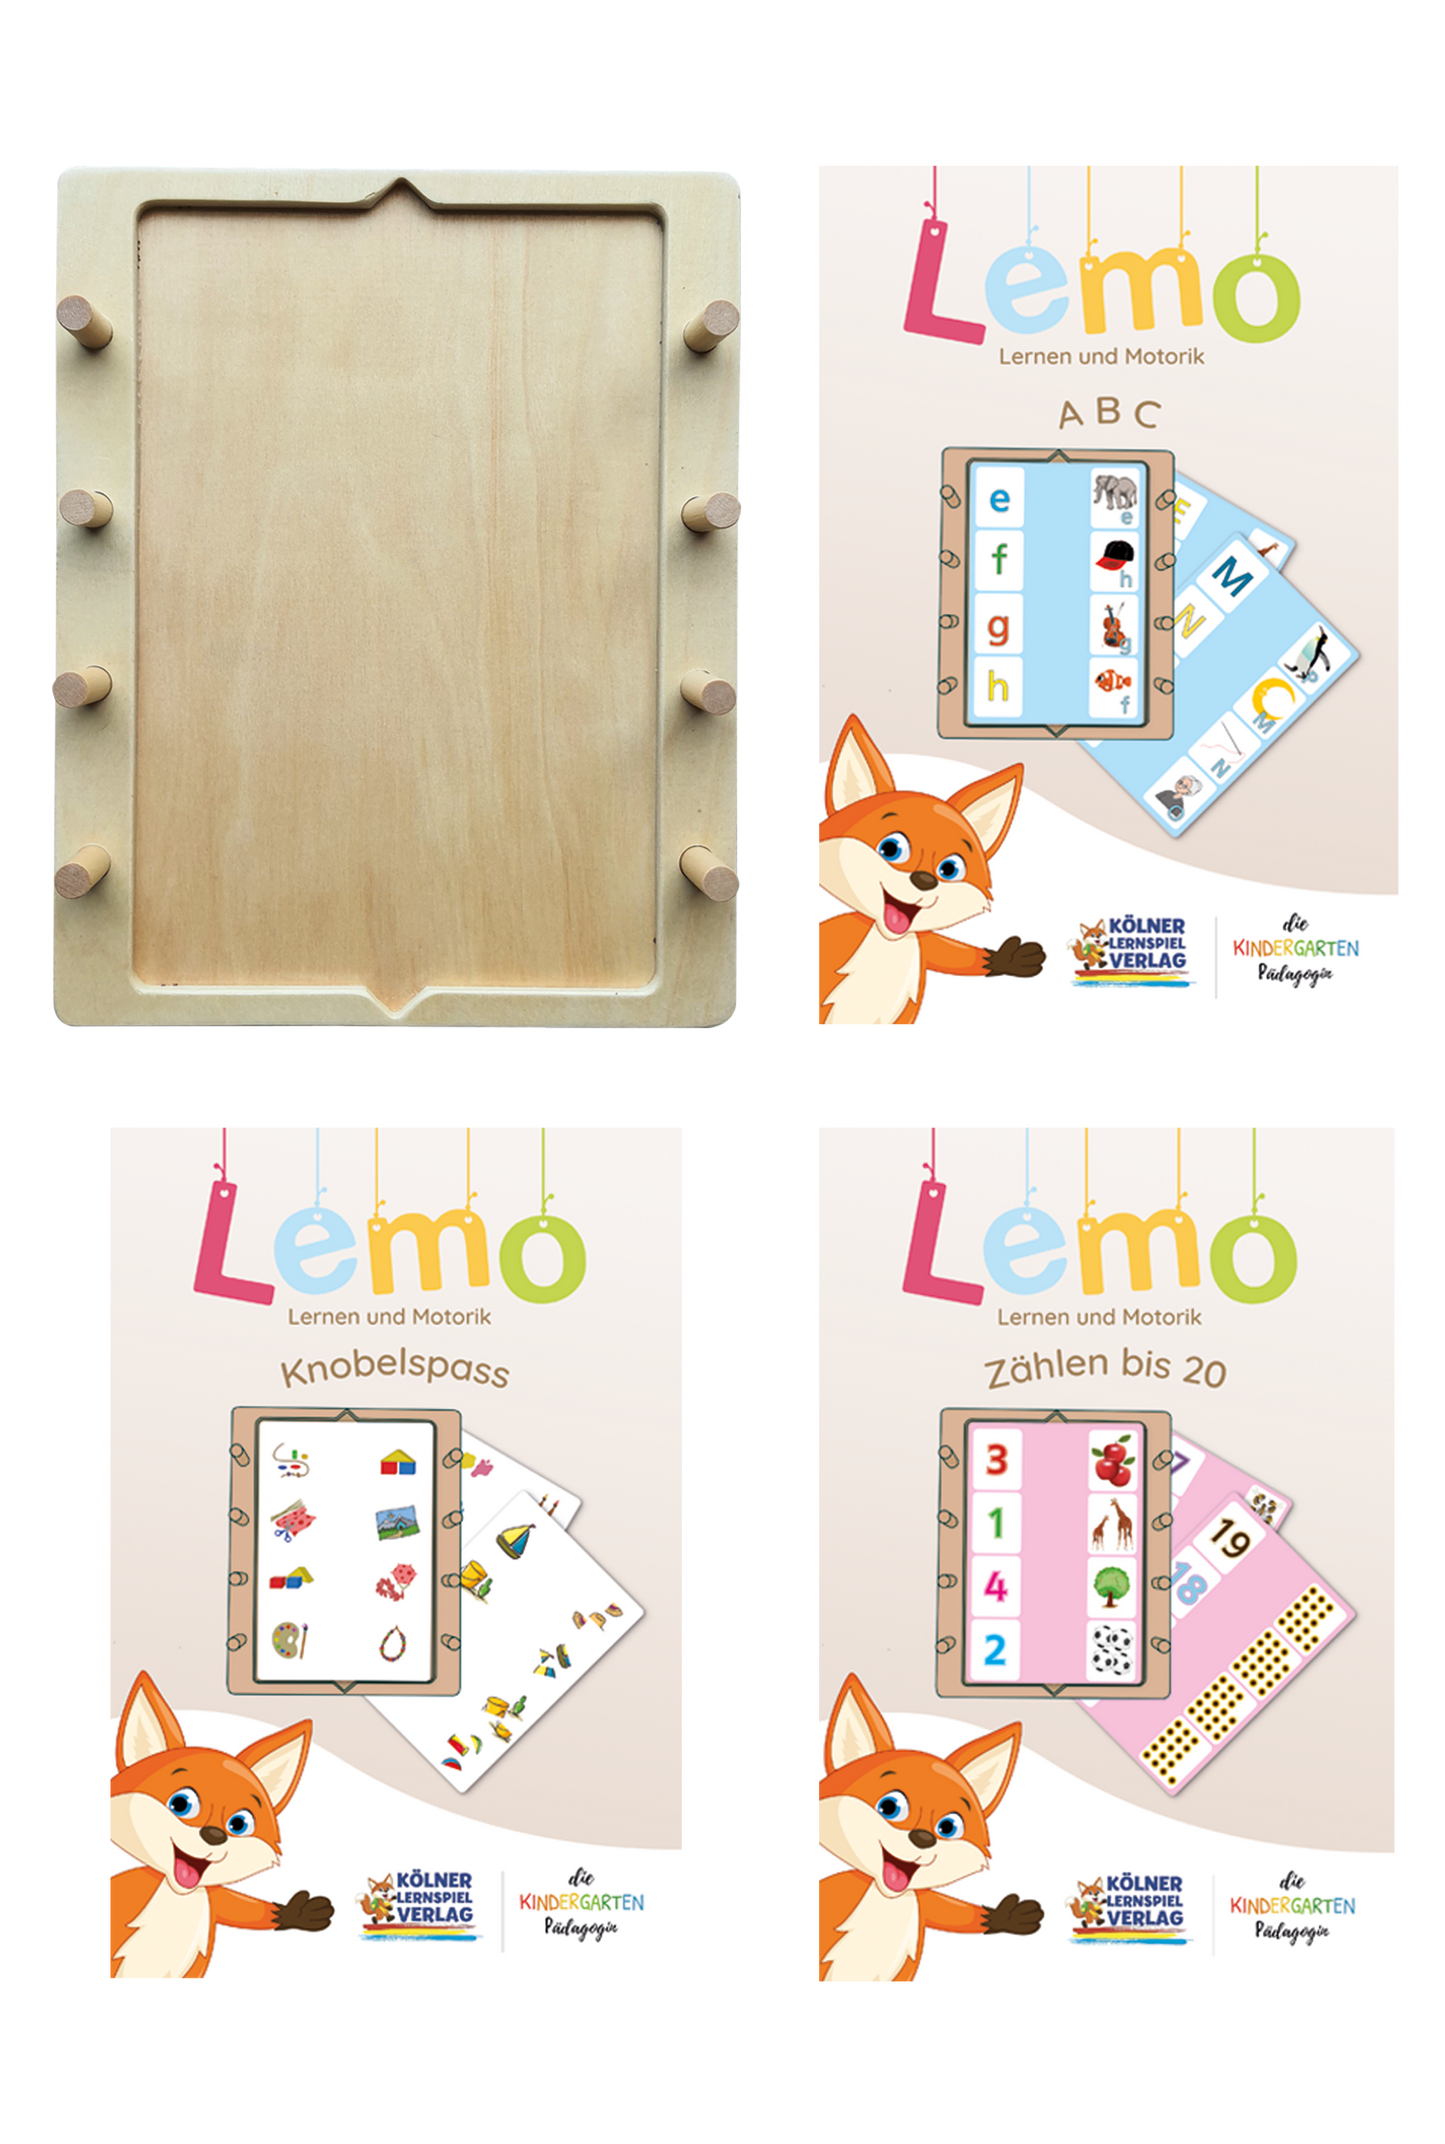 Lemo starter set from 5 years: wooden frame + 3 decks of cards